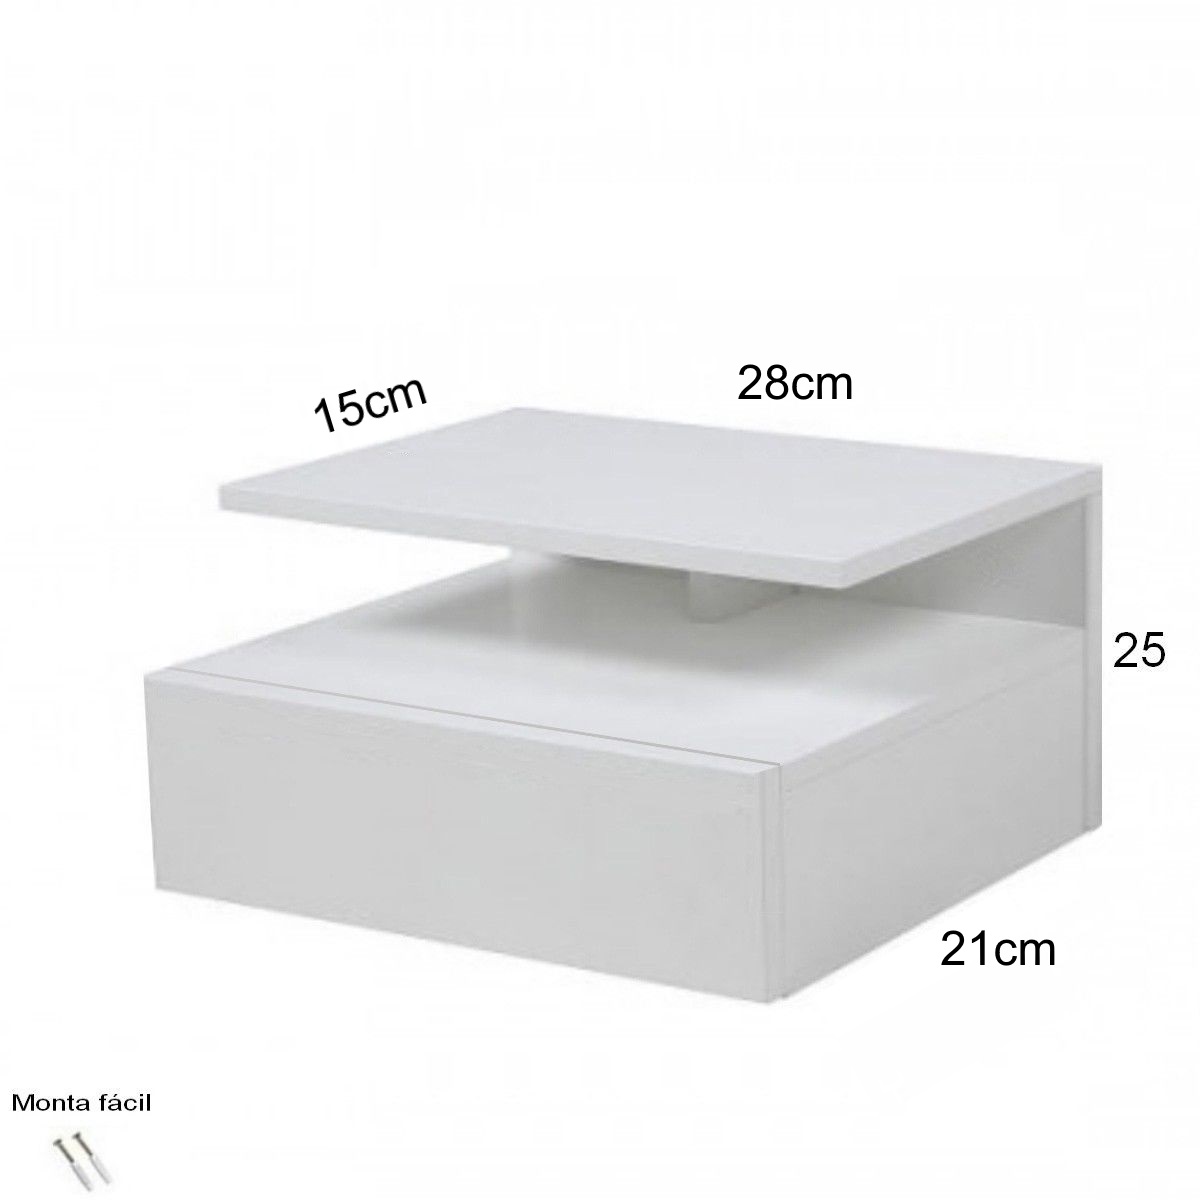 Mesita de noche flotante ALFA Especial 28cm - Color Blanco Soft. -  Mobiliario auxiliar del hogar